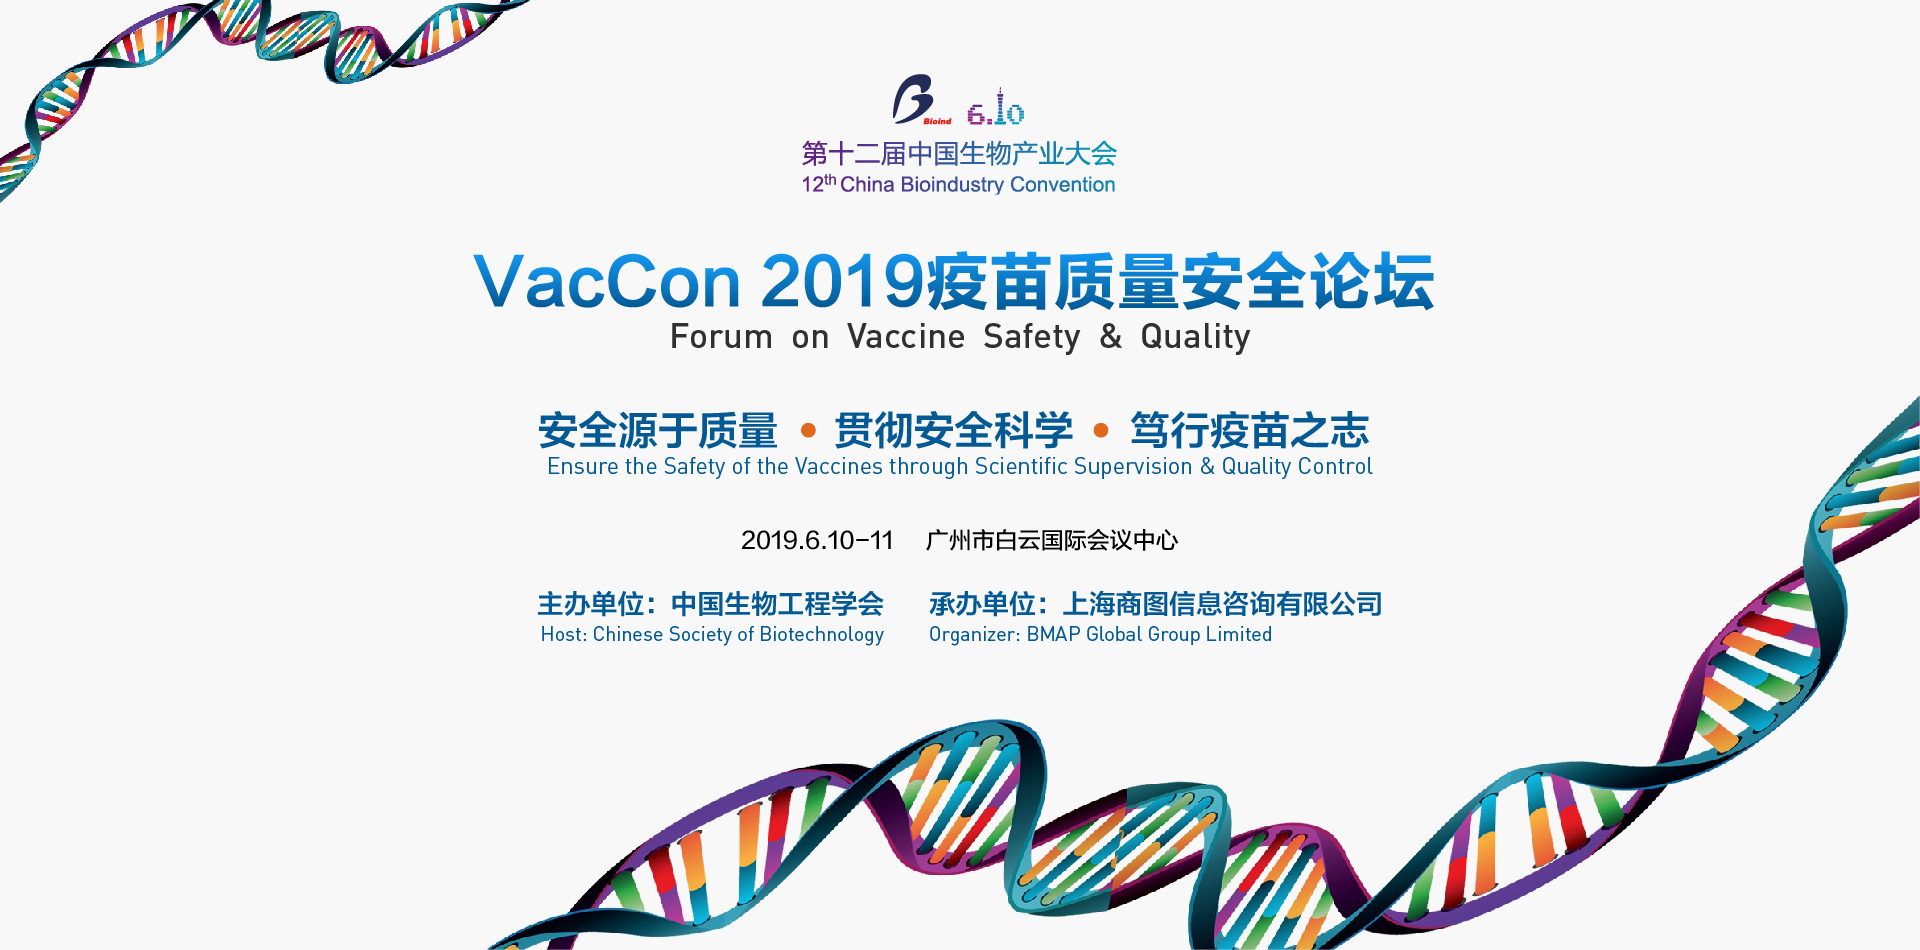 VacCon 2019疫苗质量安全论坛